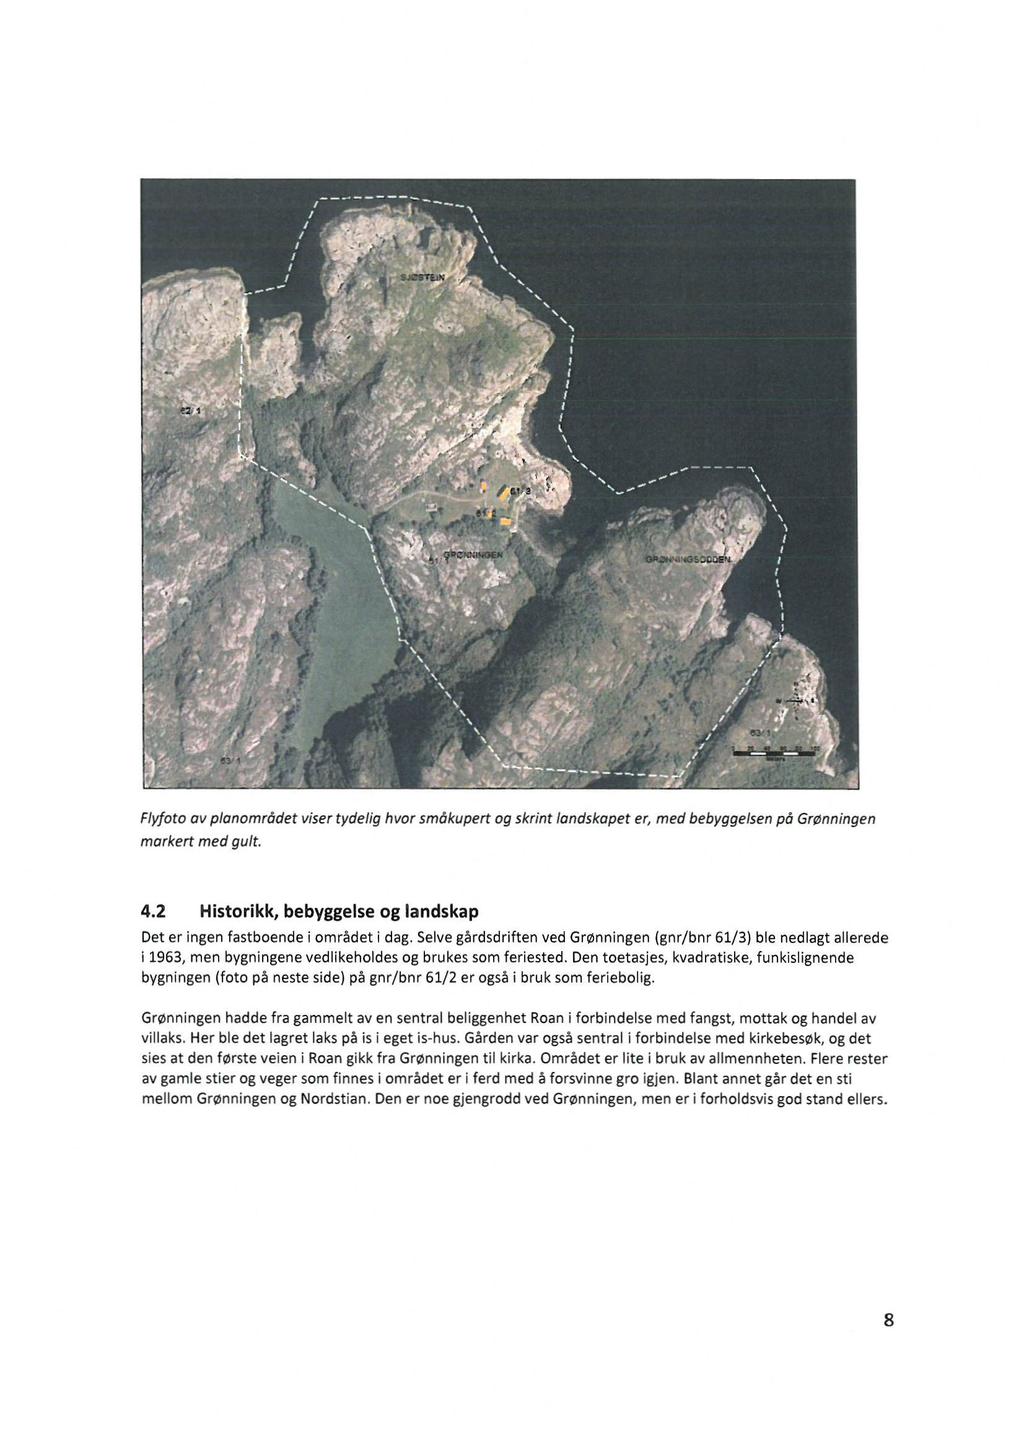 - Flyfoto av planområdet viser tydelig hvor småkupert og skrint londskopet er, med bebyggelsen på Grønningen morkert med gult. 4.